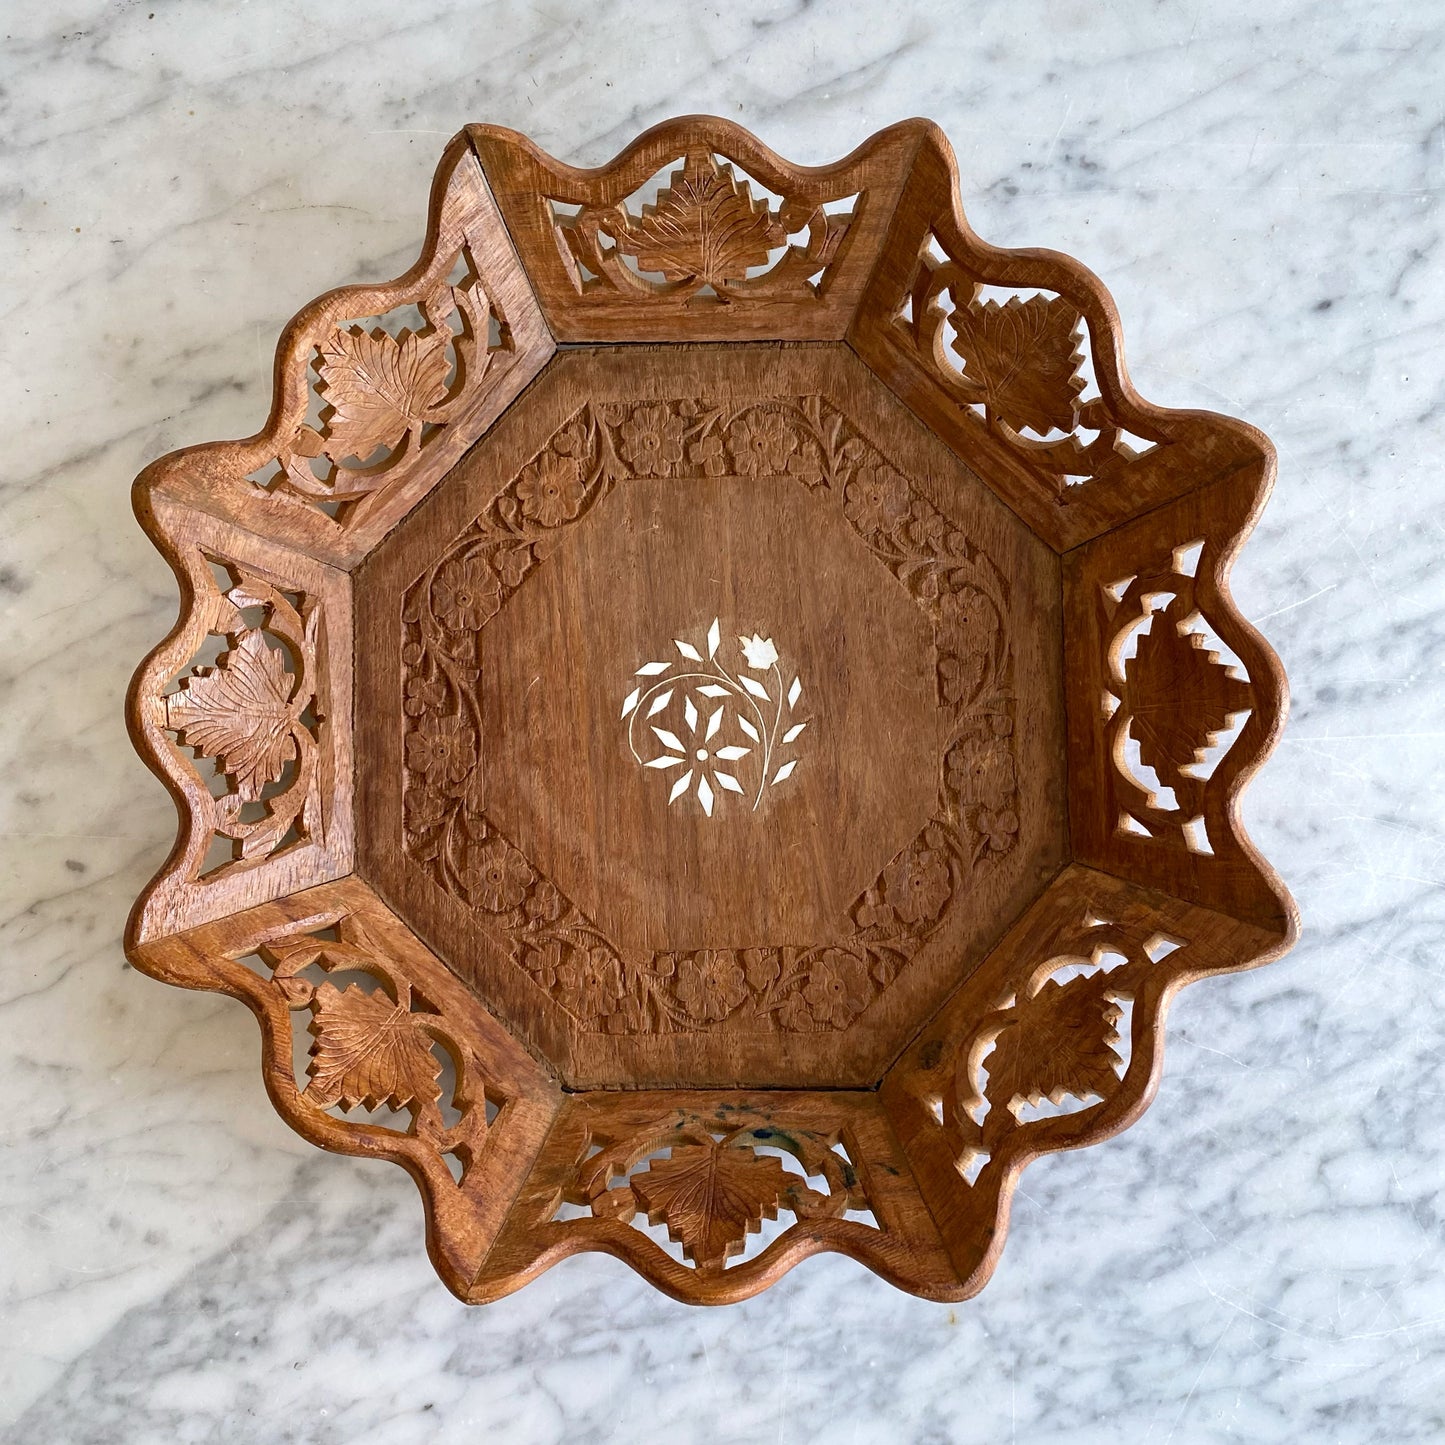 Vintage Wood Tray with Flower + Leaf Design